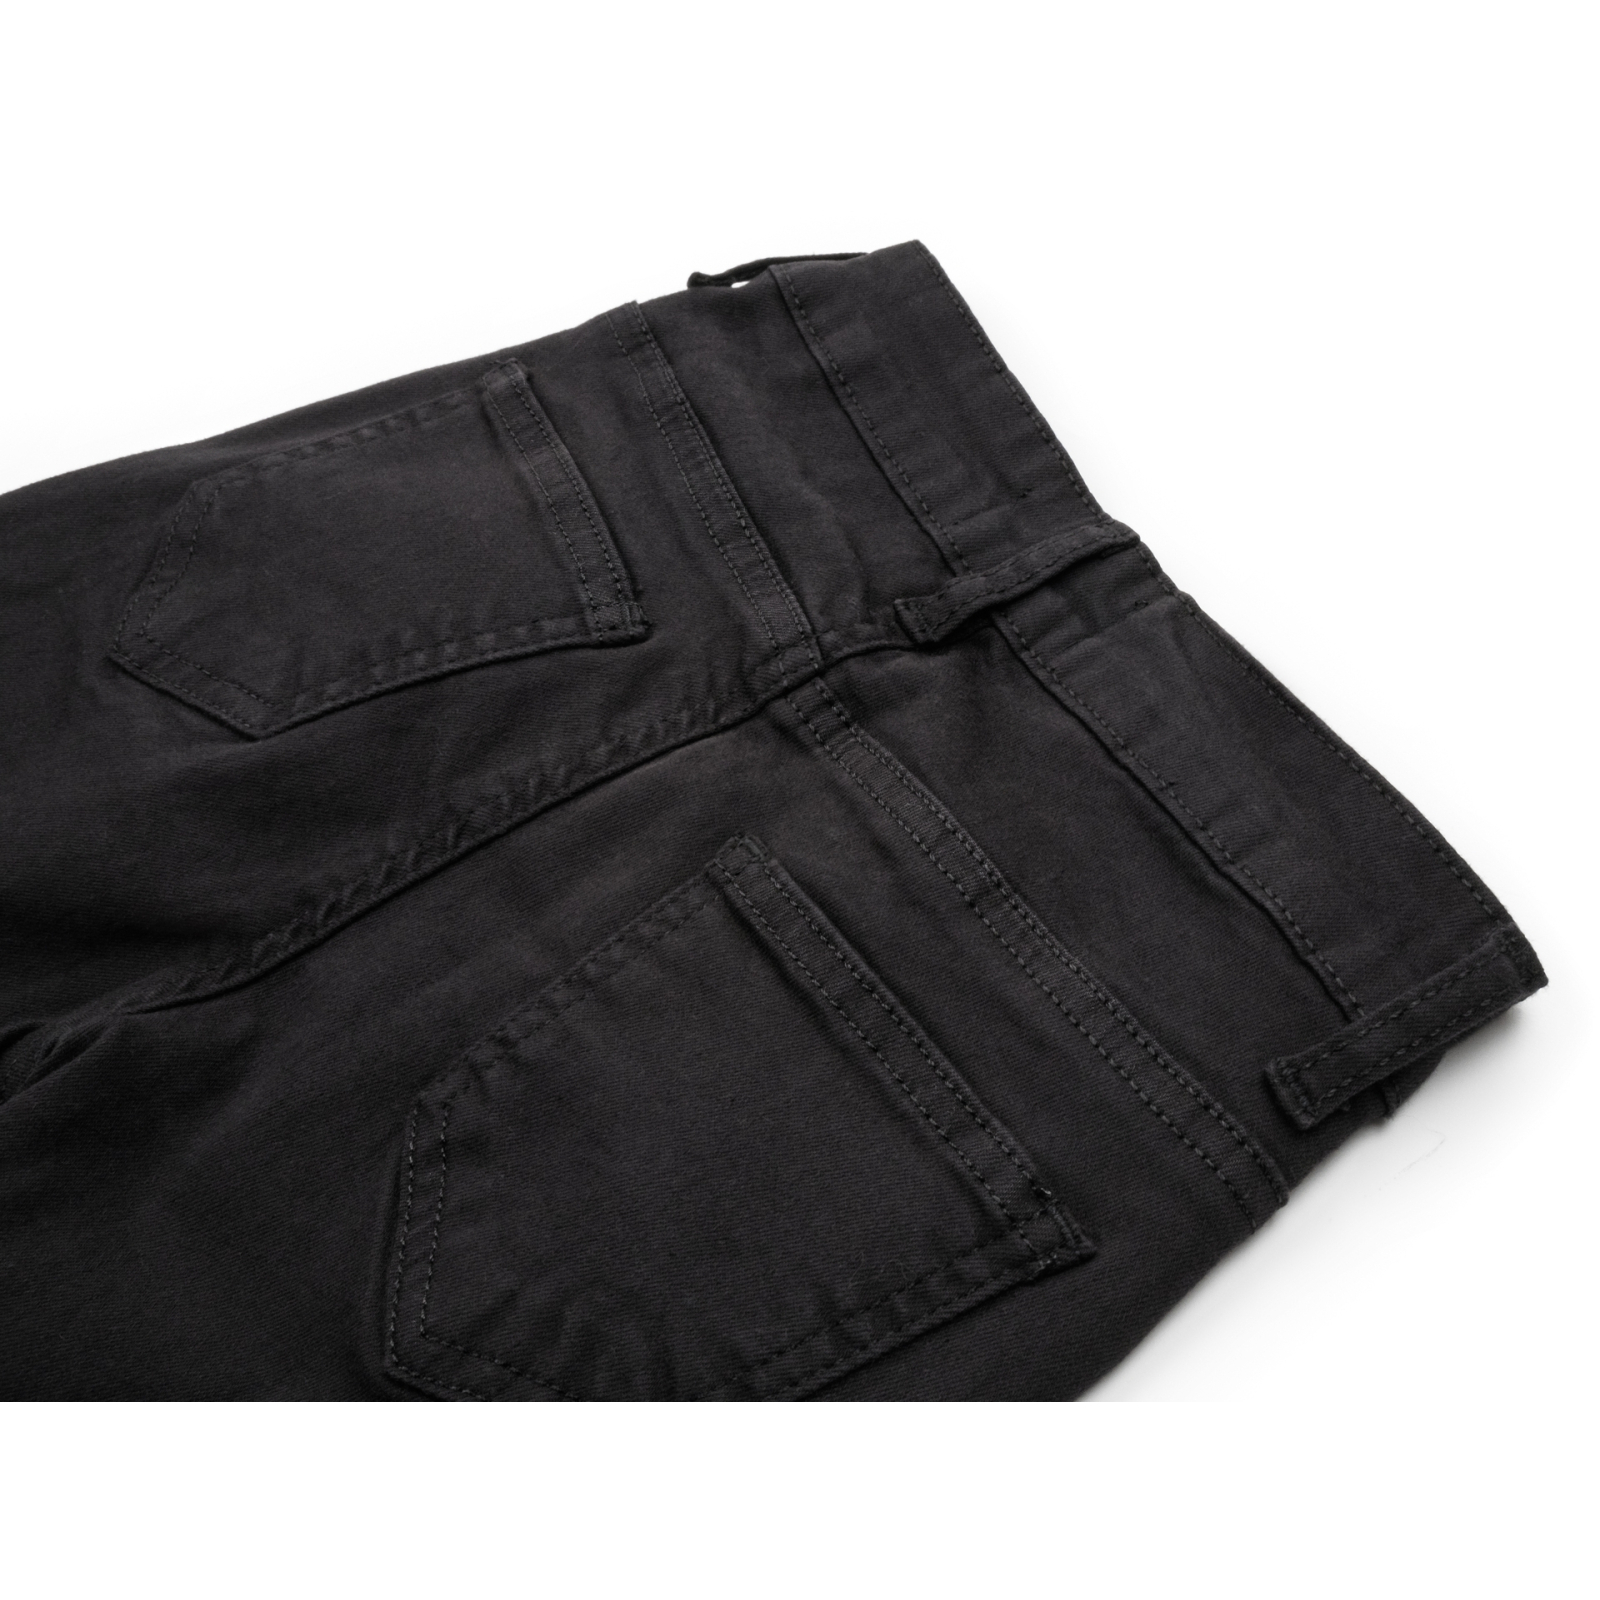 Штаны детские Breeze джинсовые зауженные (13212-152G-black) изображение 4